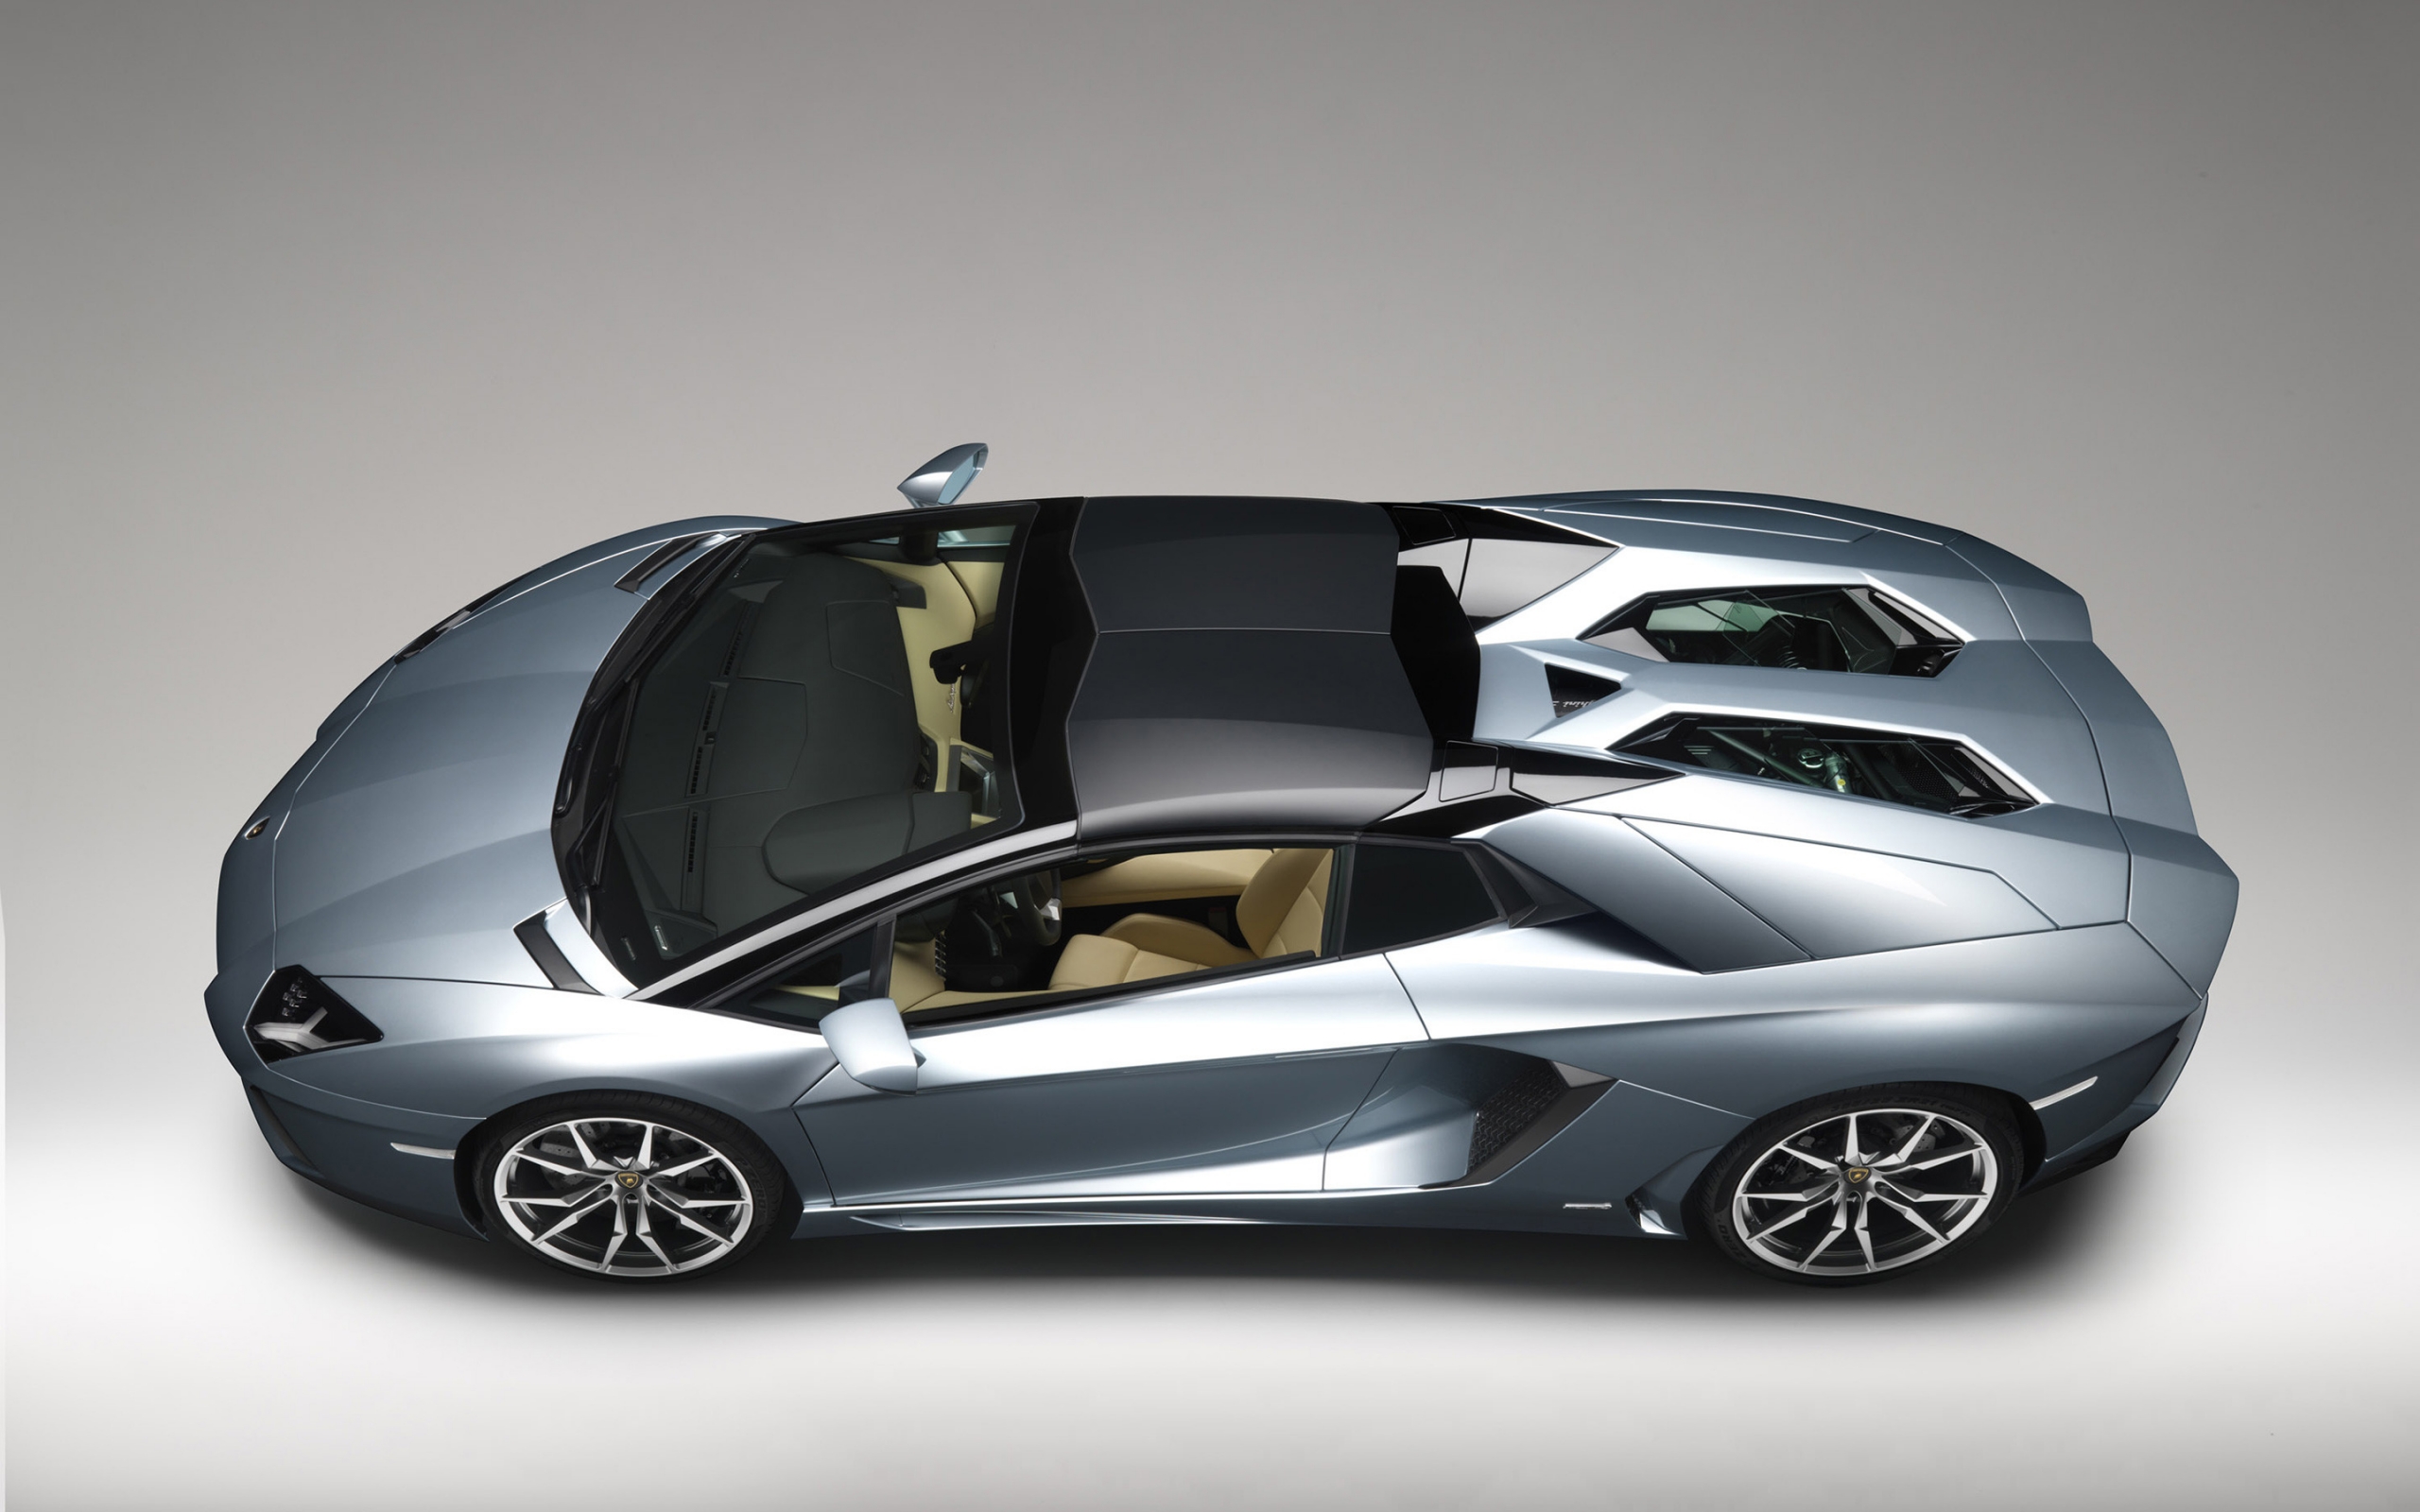 Lamborghini Aventador LP 700 Studio for 2560 x 1600 widescreen resolution